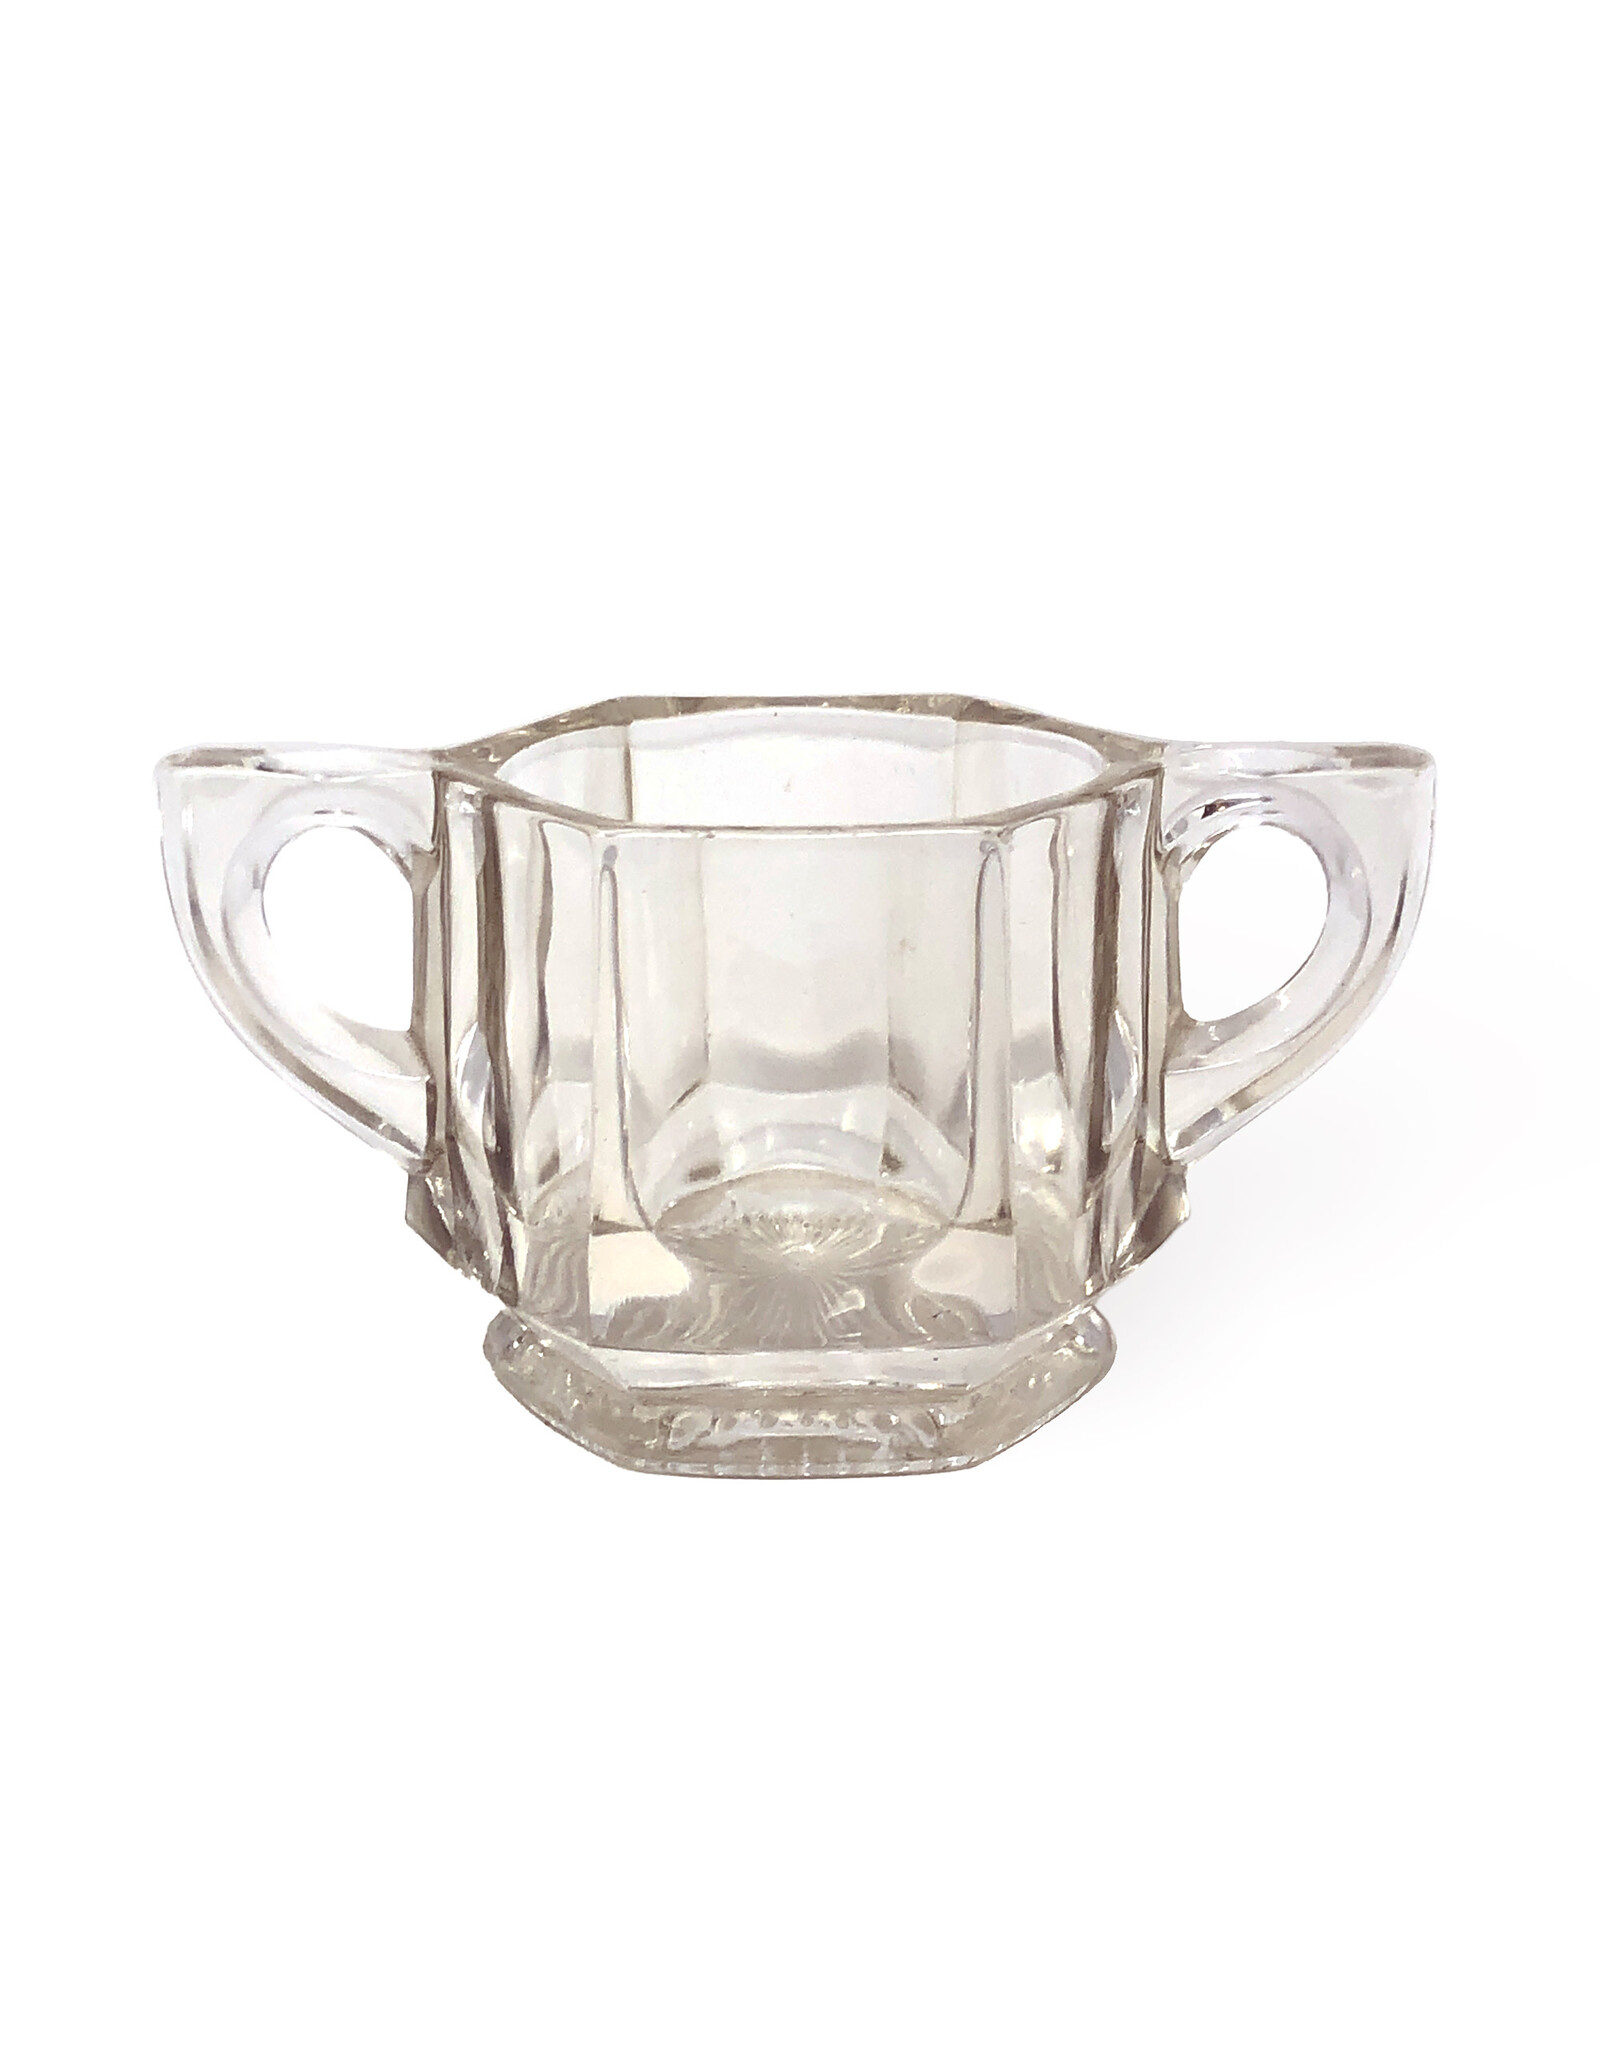 Vintage Thick Pressed Glass Sugar Bowl